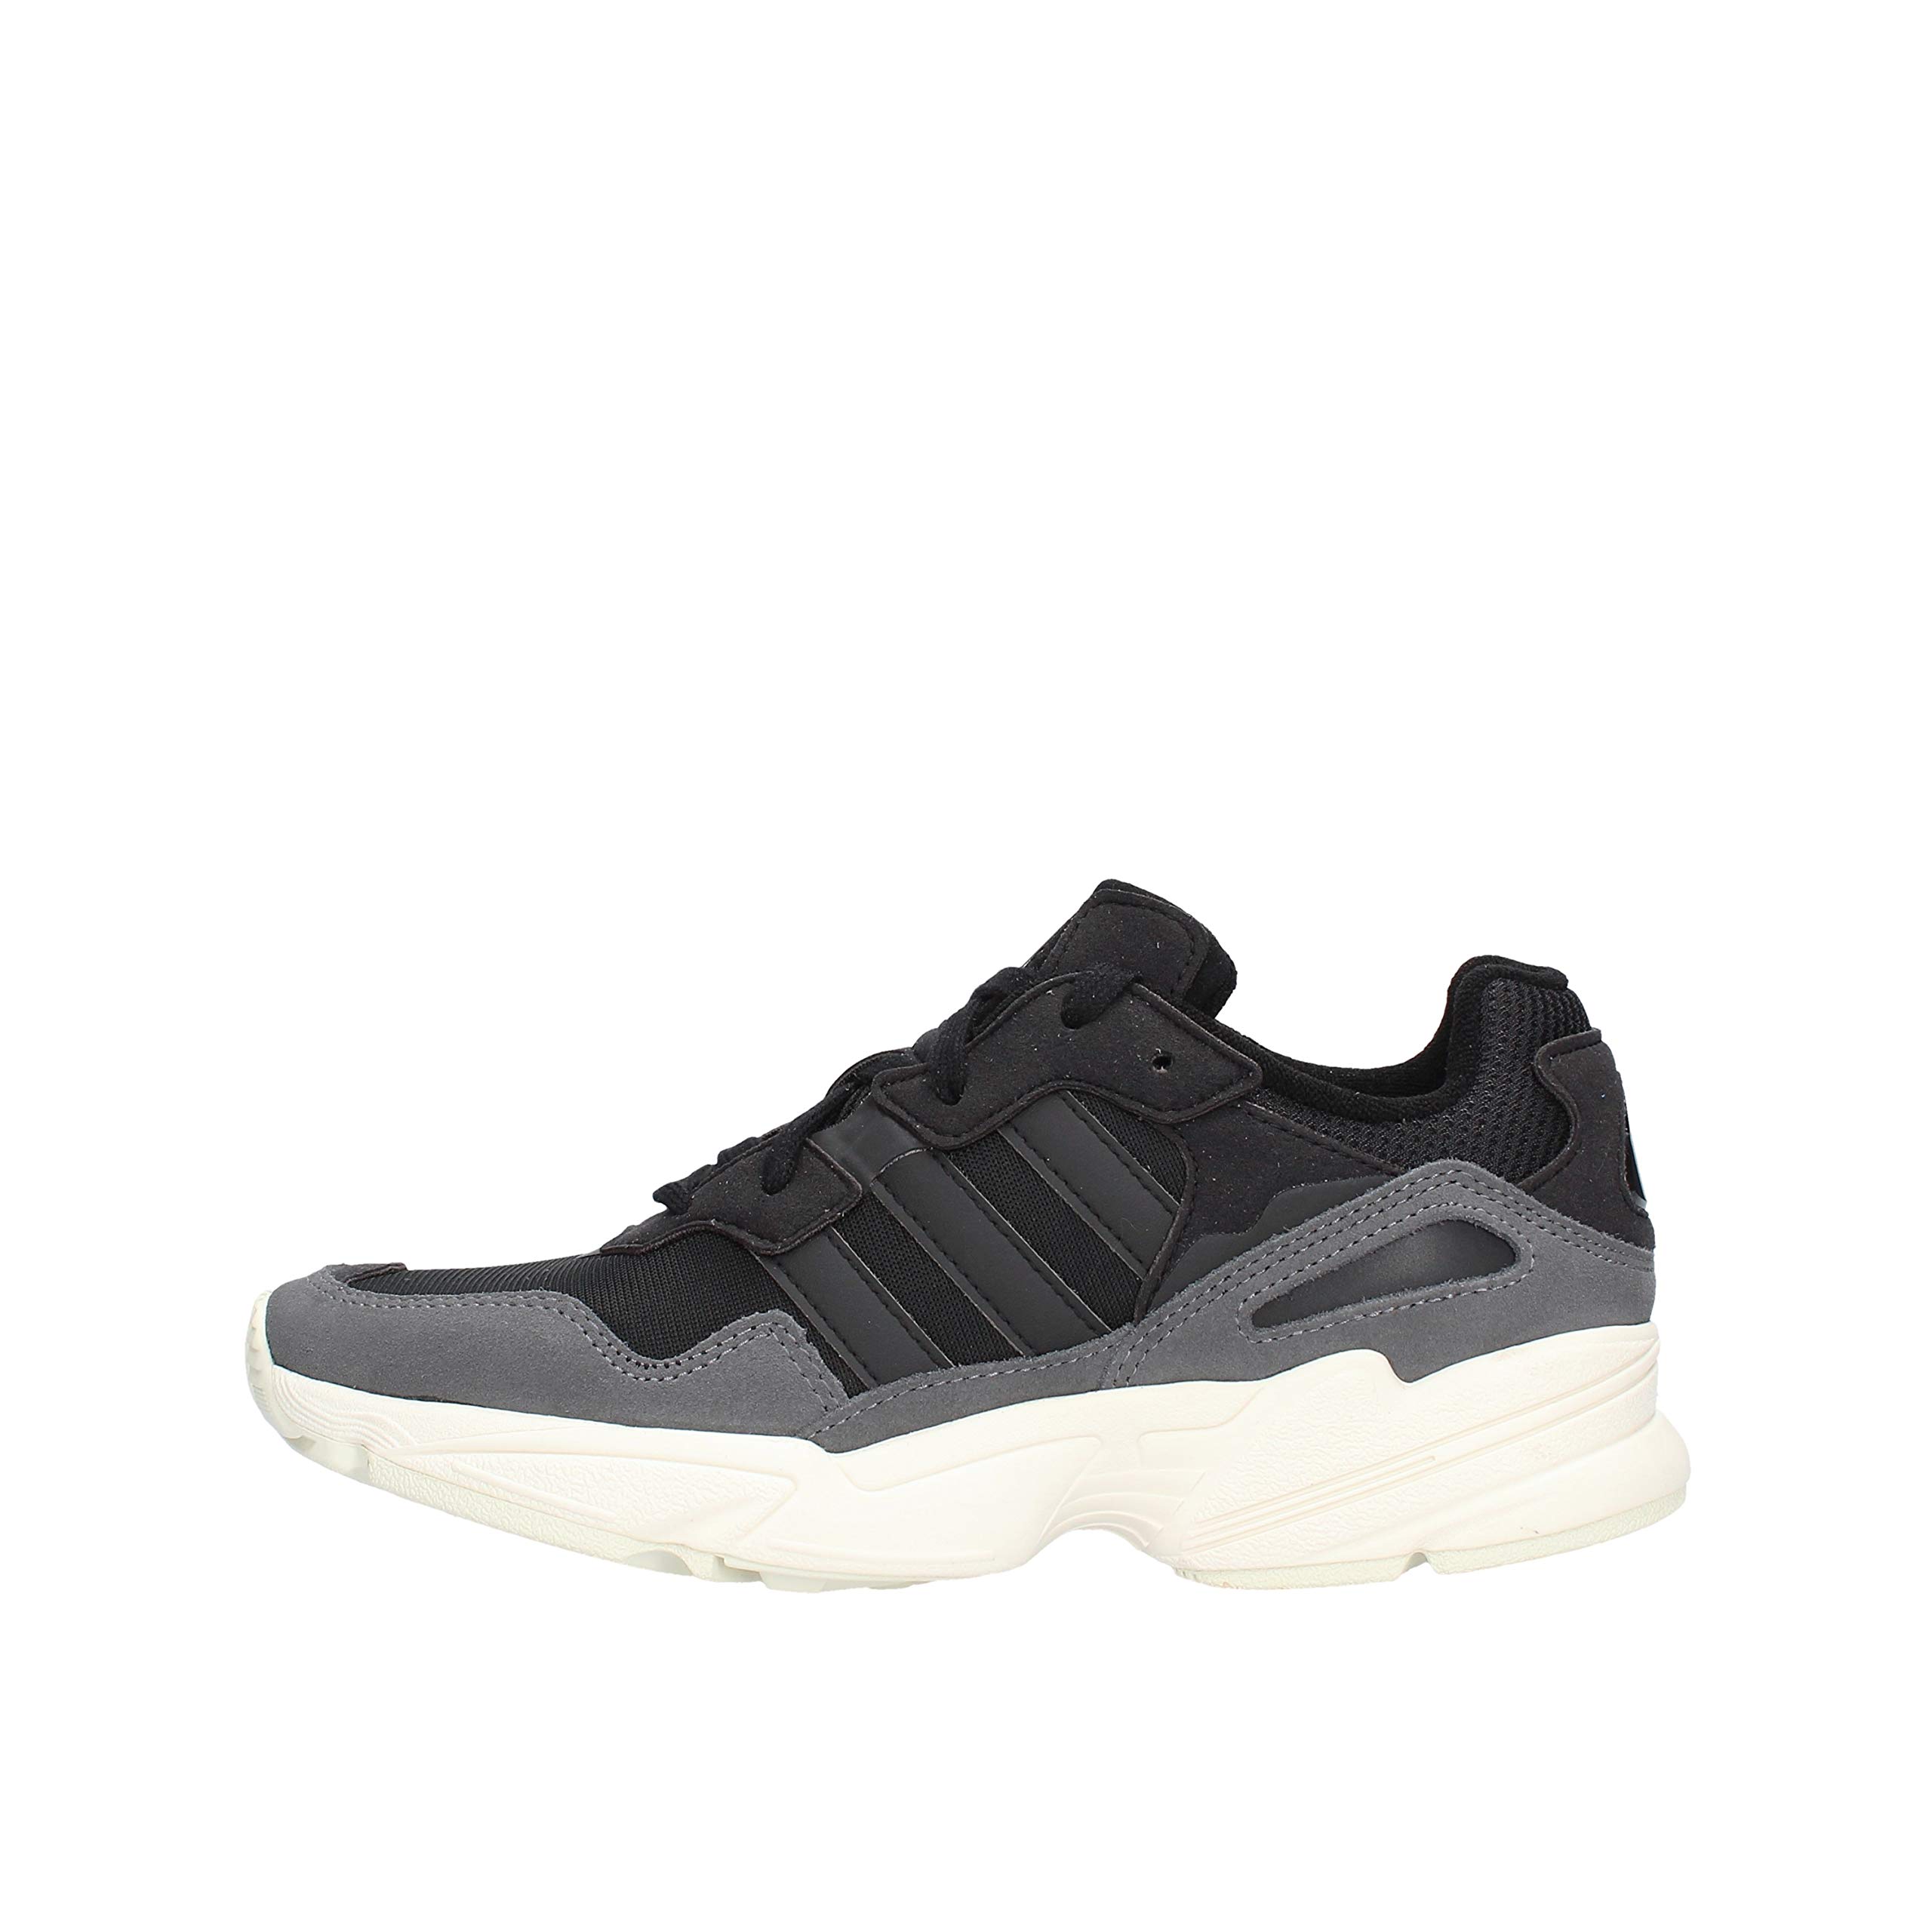 Adidas Herren Yung-96 Sneaker, Schwarz (Black Ee7245), 42 2/3 EU